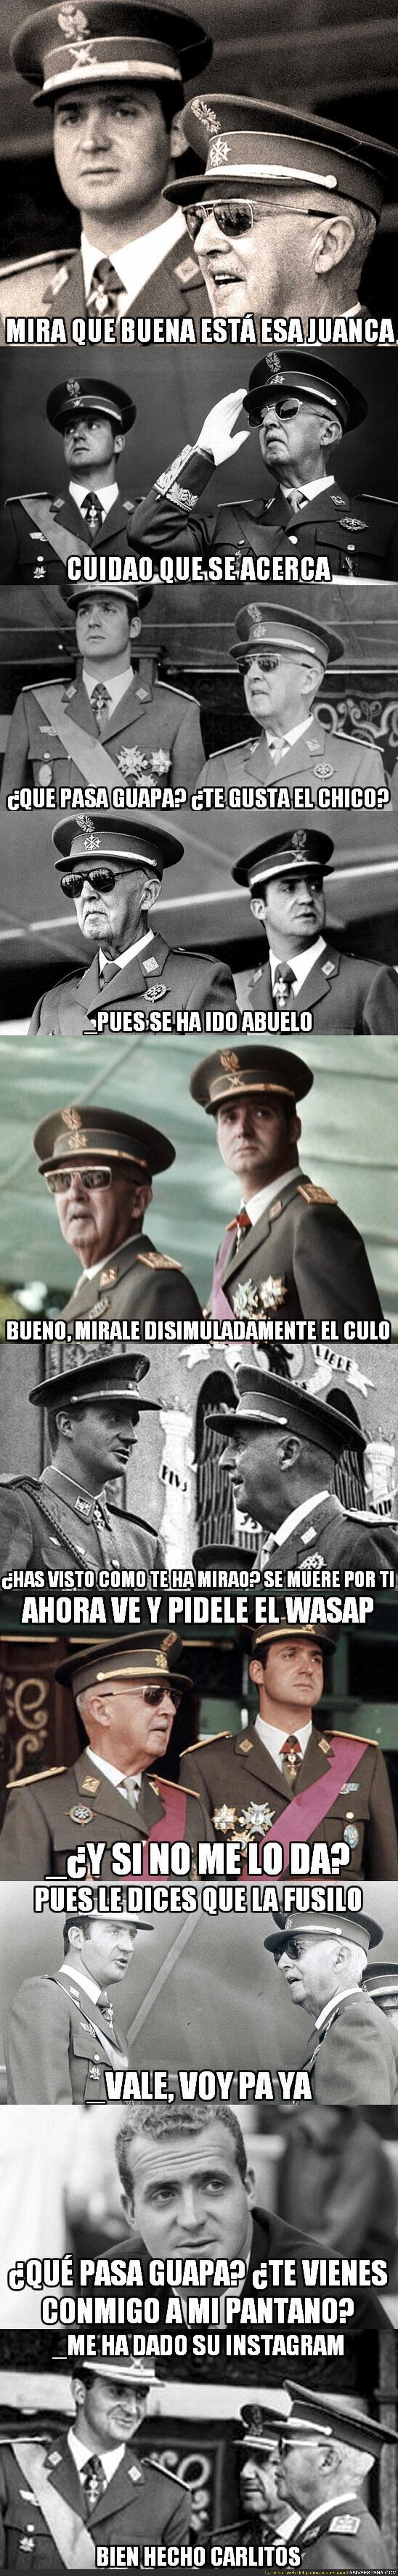 Técnicas de ligue por Francisco Franco